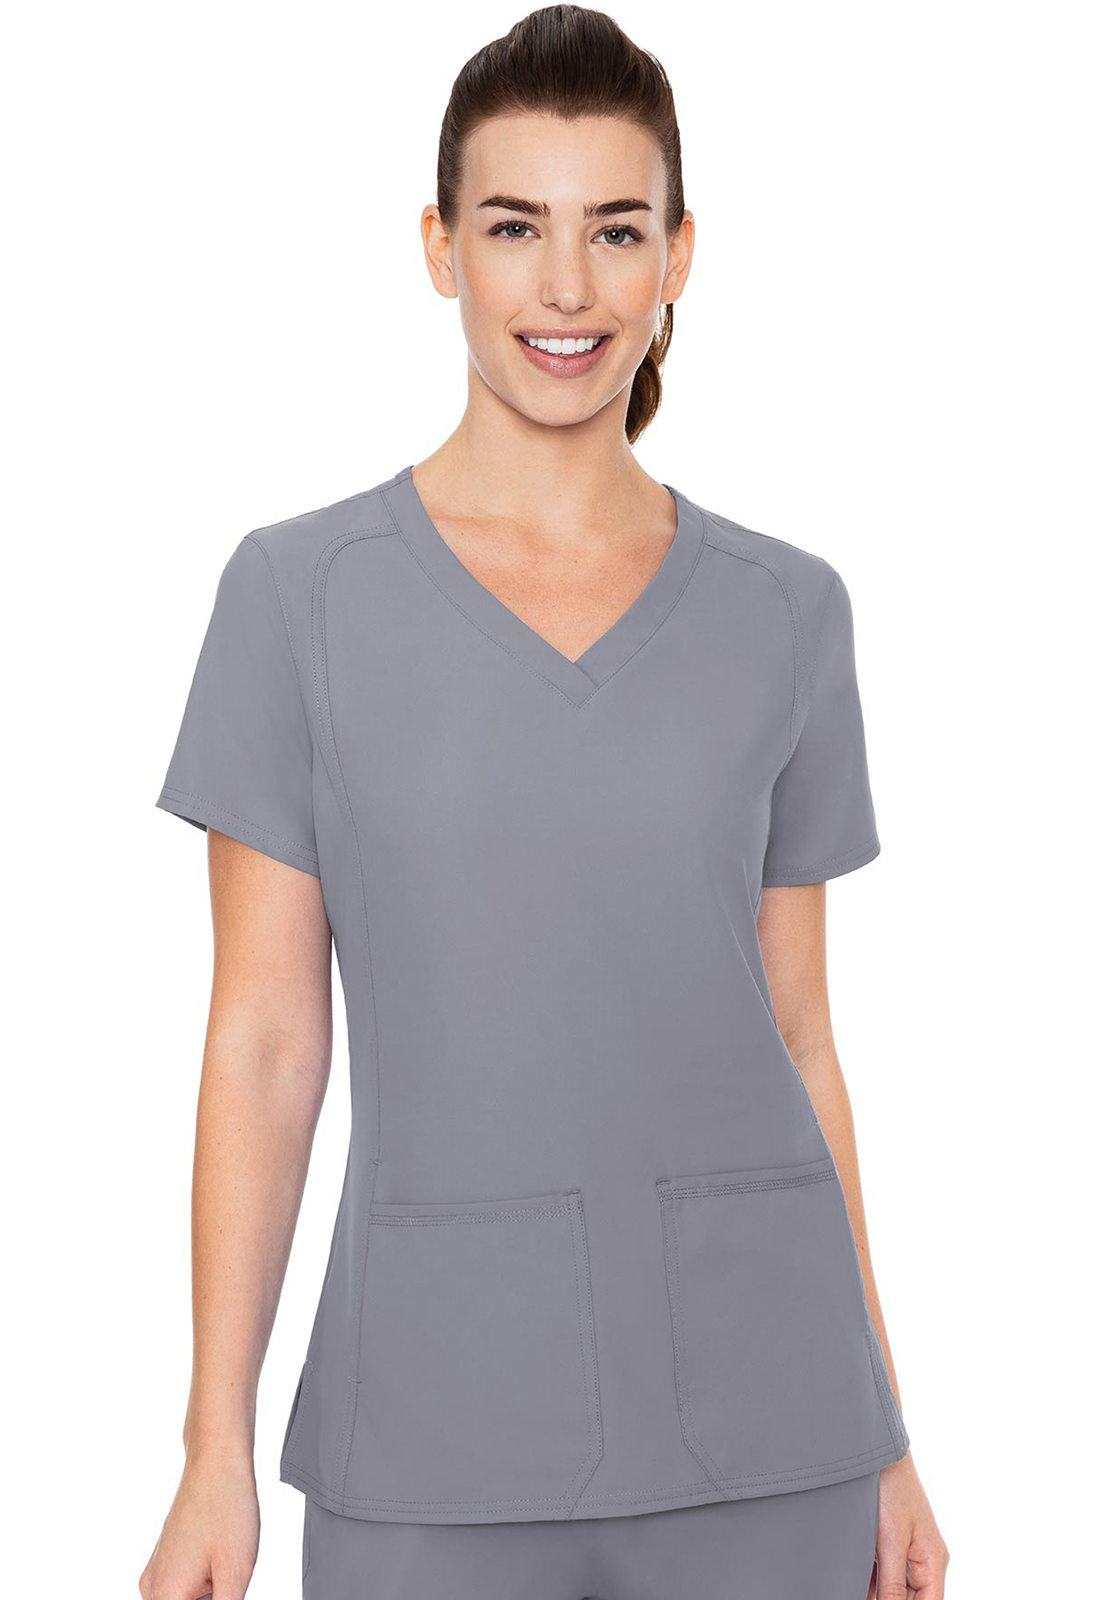 Blusa del uniforme médico mujer unicolor med couture mc insight mc2468 clod